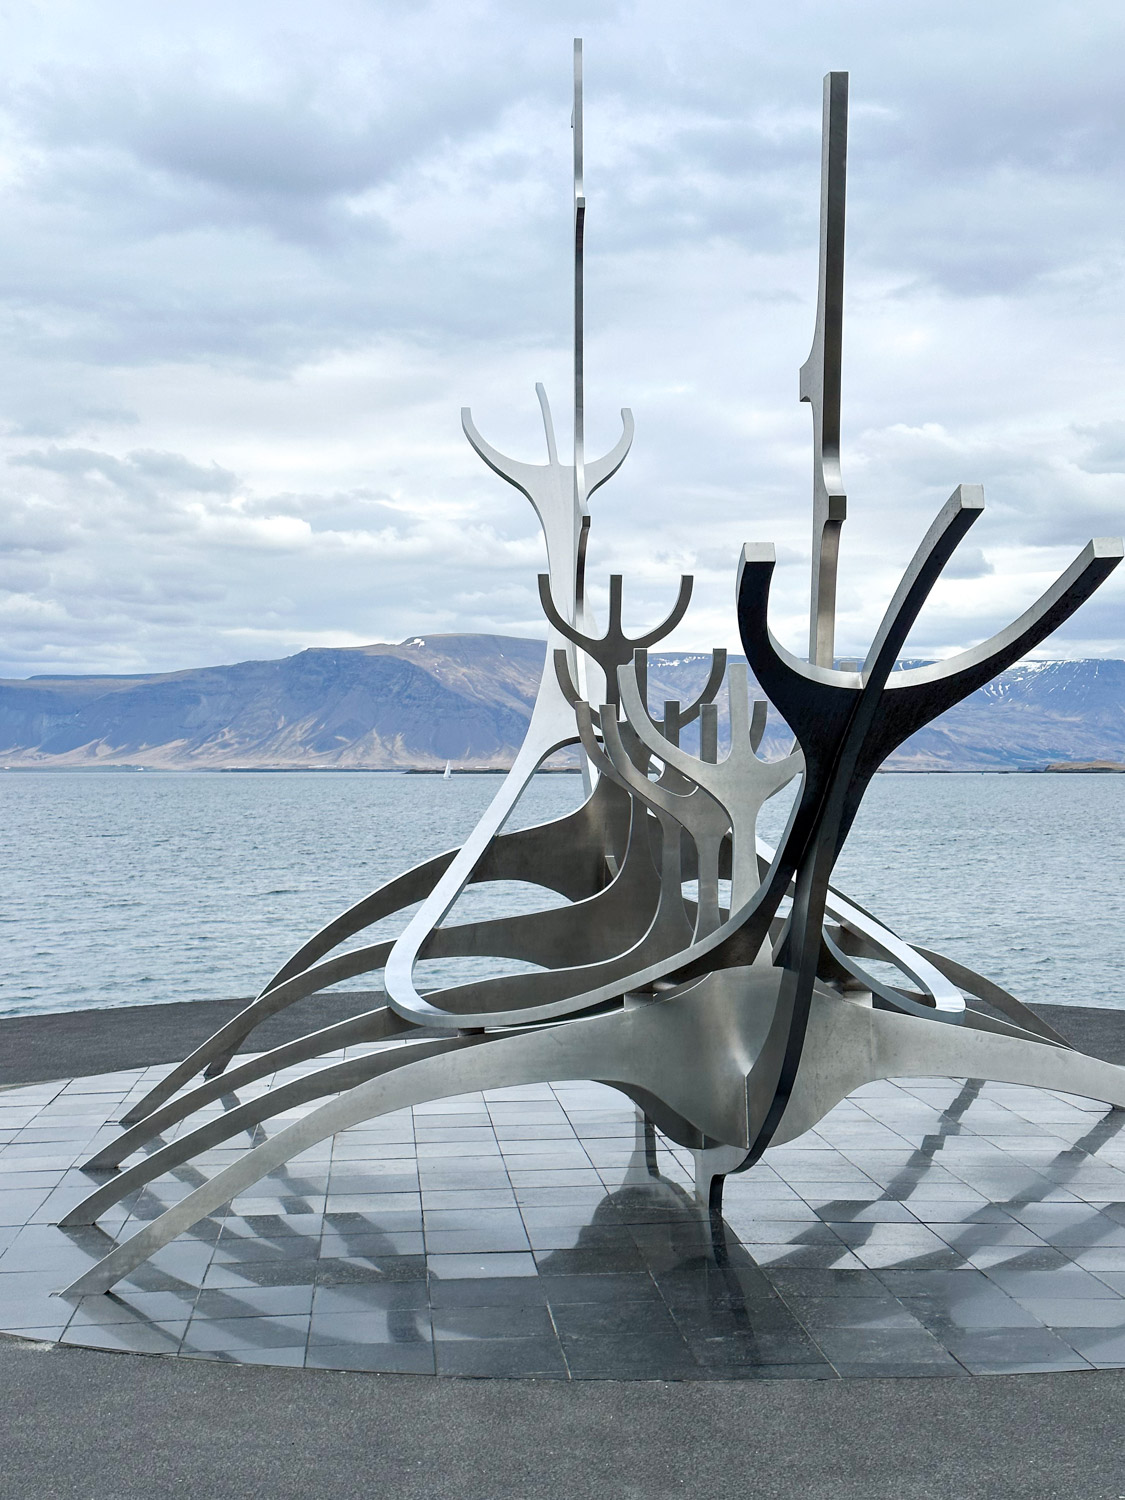 Reykjavik boat sculpture, The Sun Voyager Sculpture Reykjavik Iceland